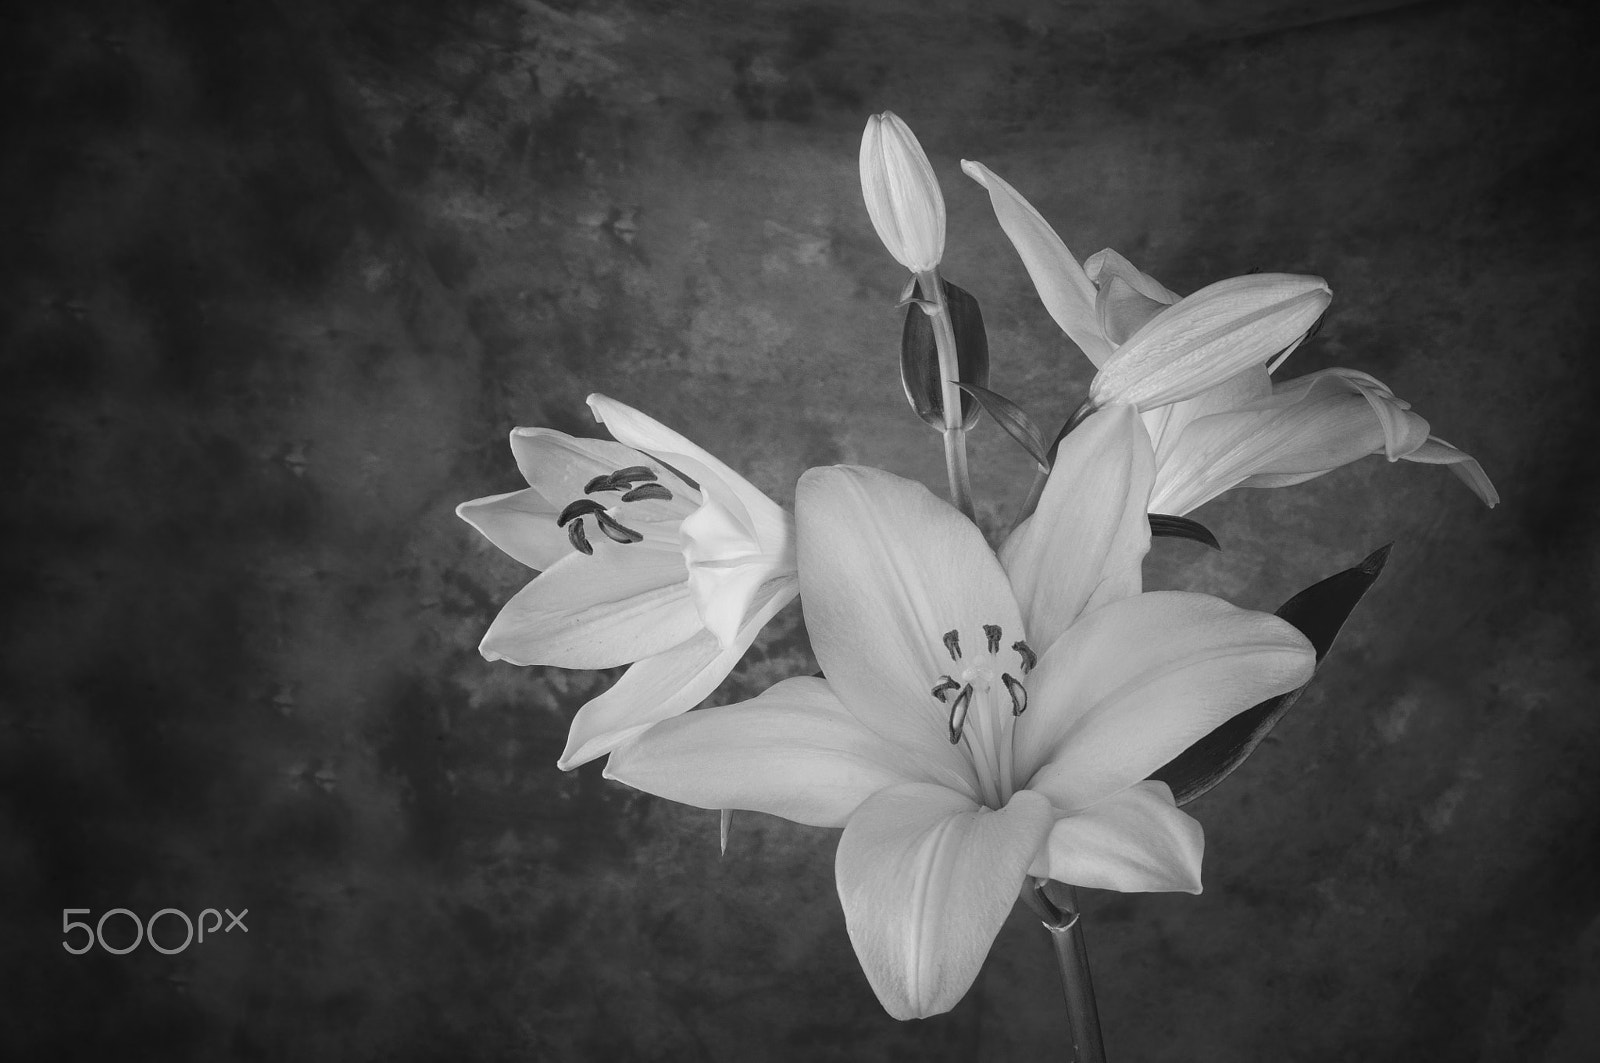 AF Zoom-Nikkor 35-70mm f/2.8D sample photo. Lily flower in bloom photography